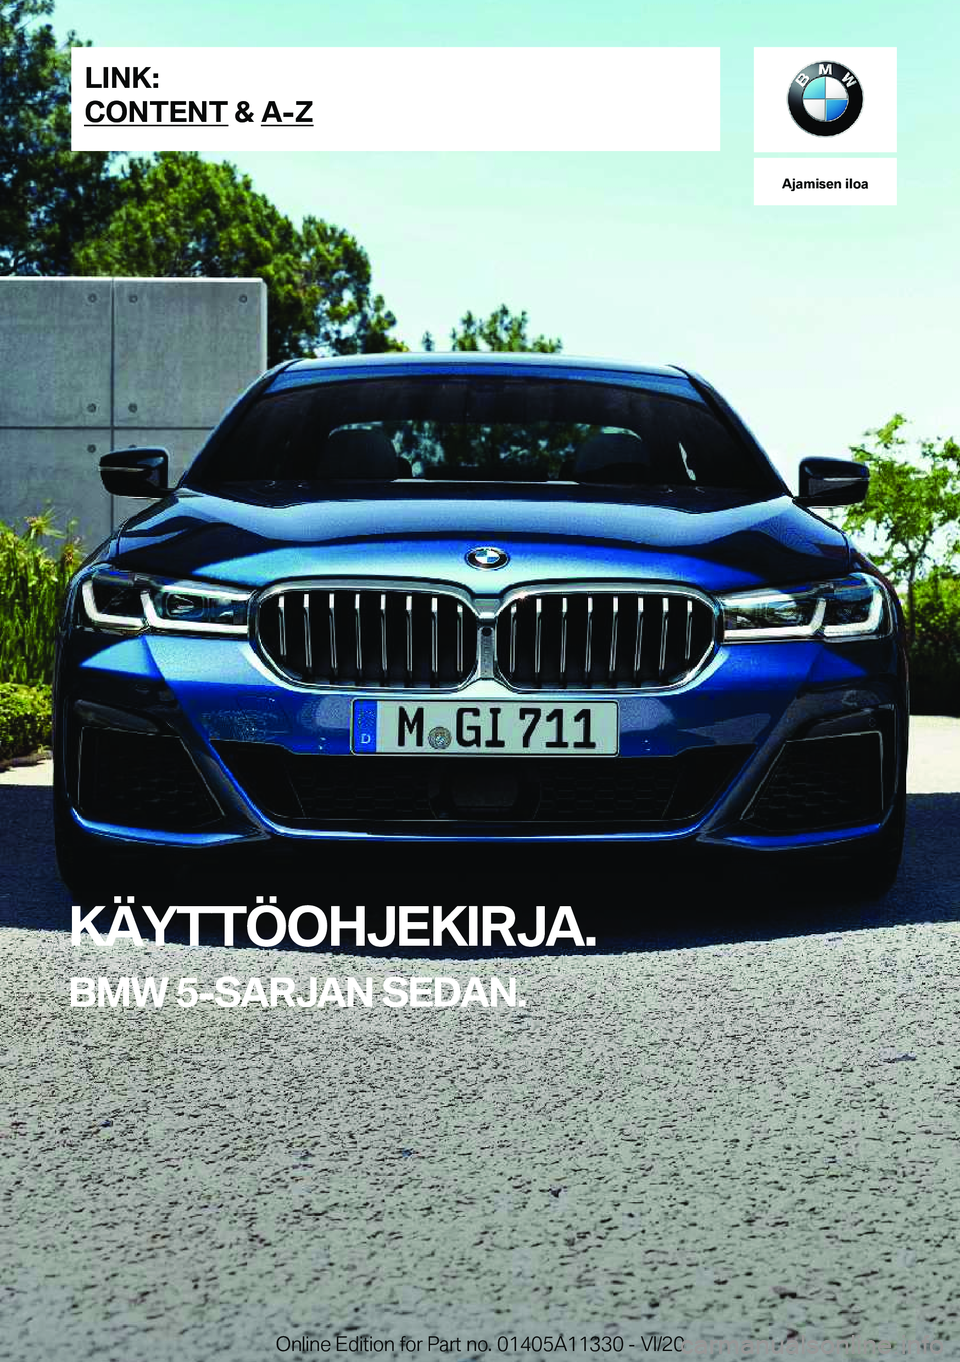 BMW 5 SERIES 2021  Omistajan Käsikirja (in Finnish) �A�j�a�m�i�s�e�n��i�l�o�a
�K�